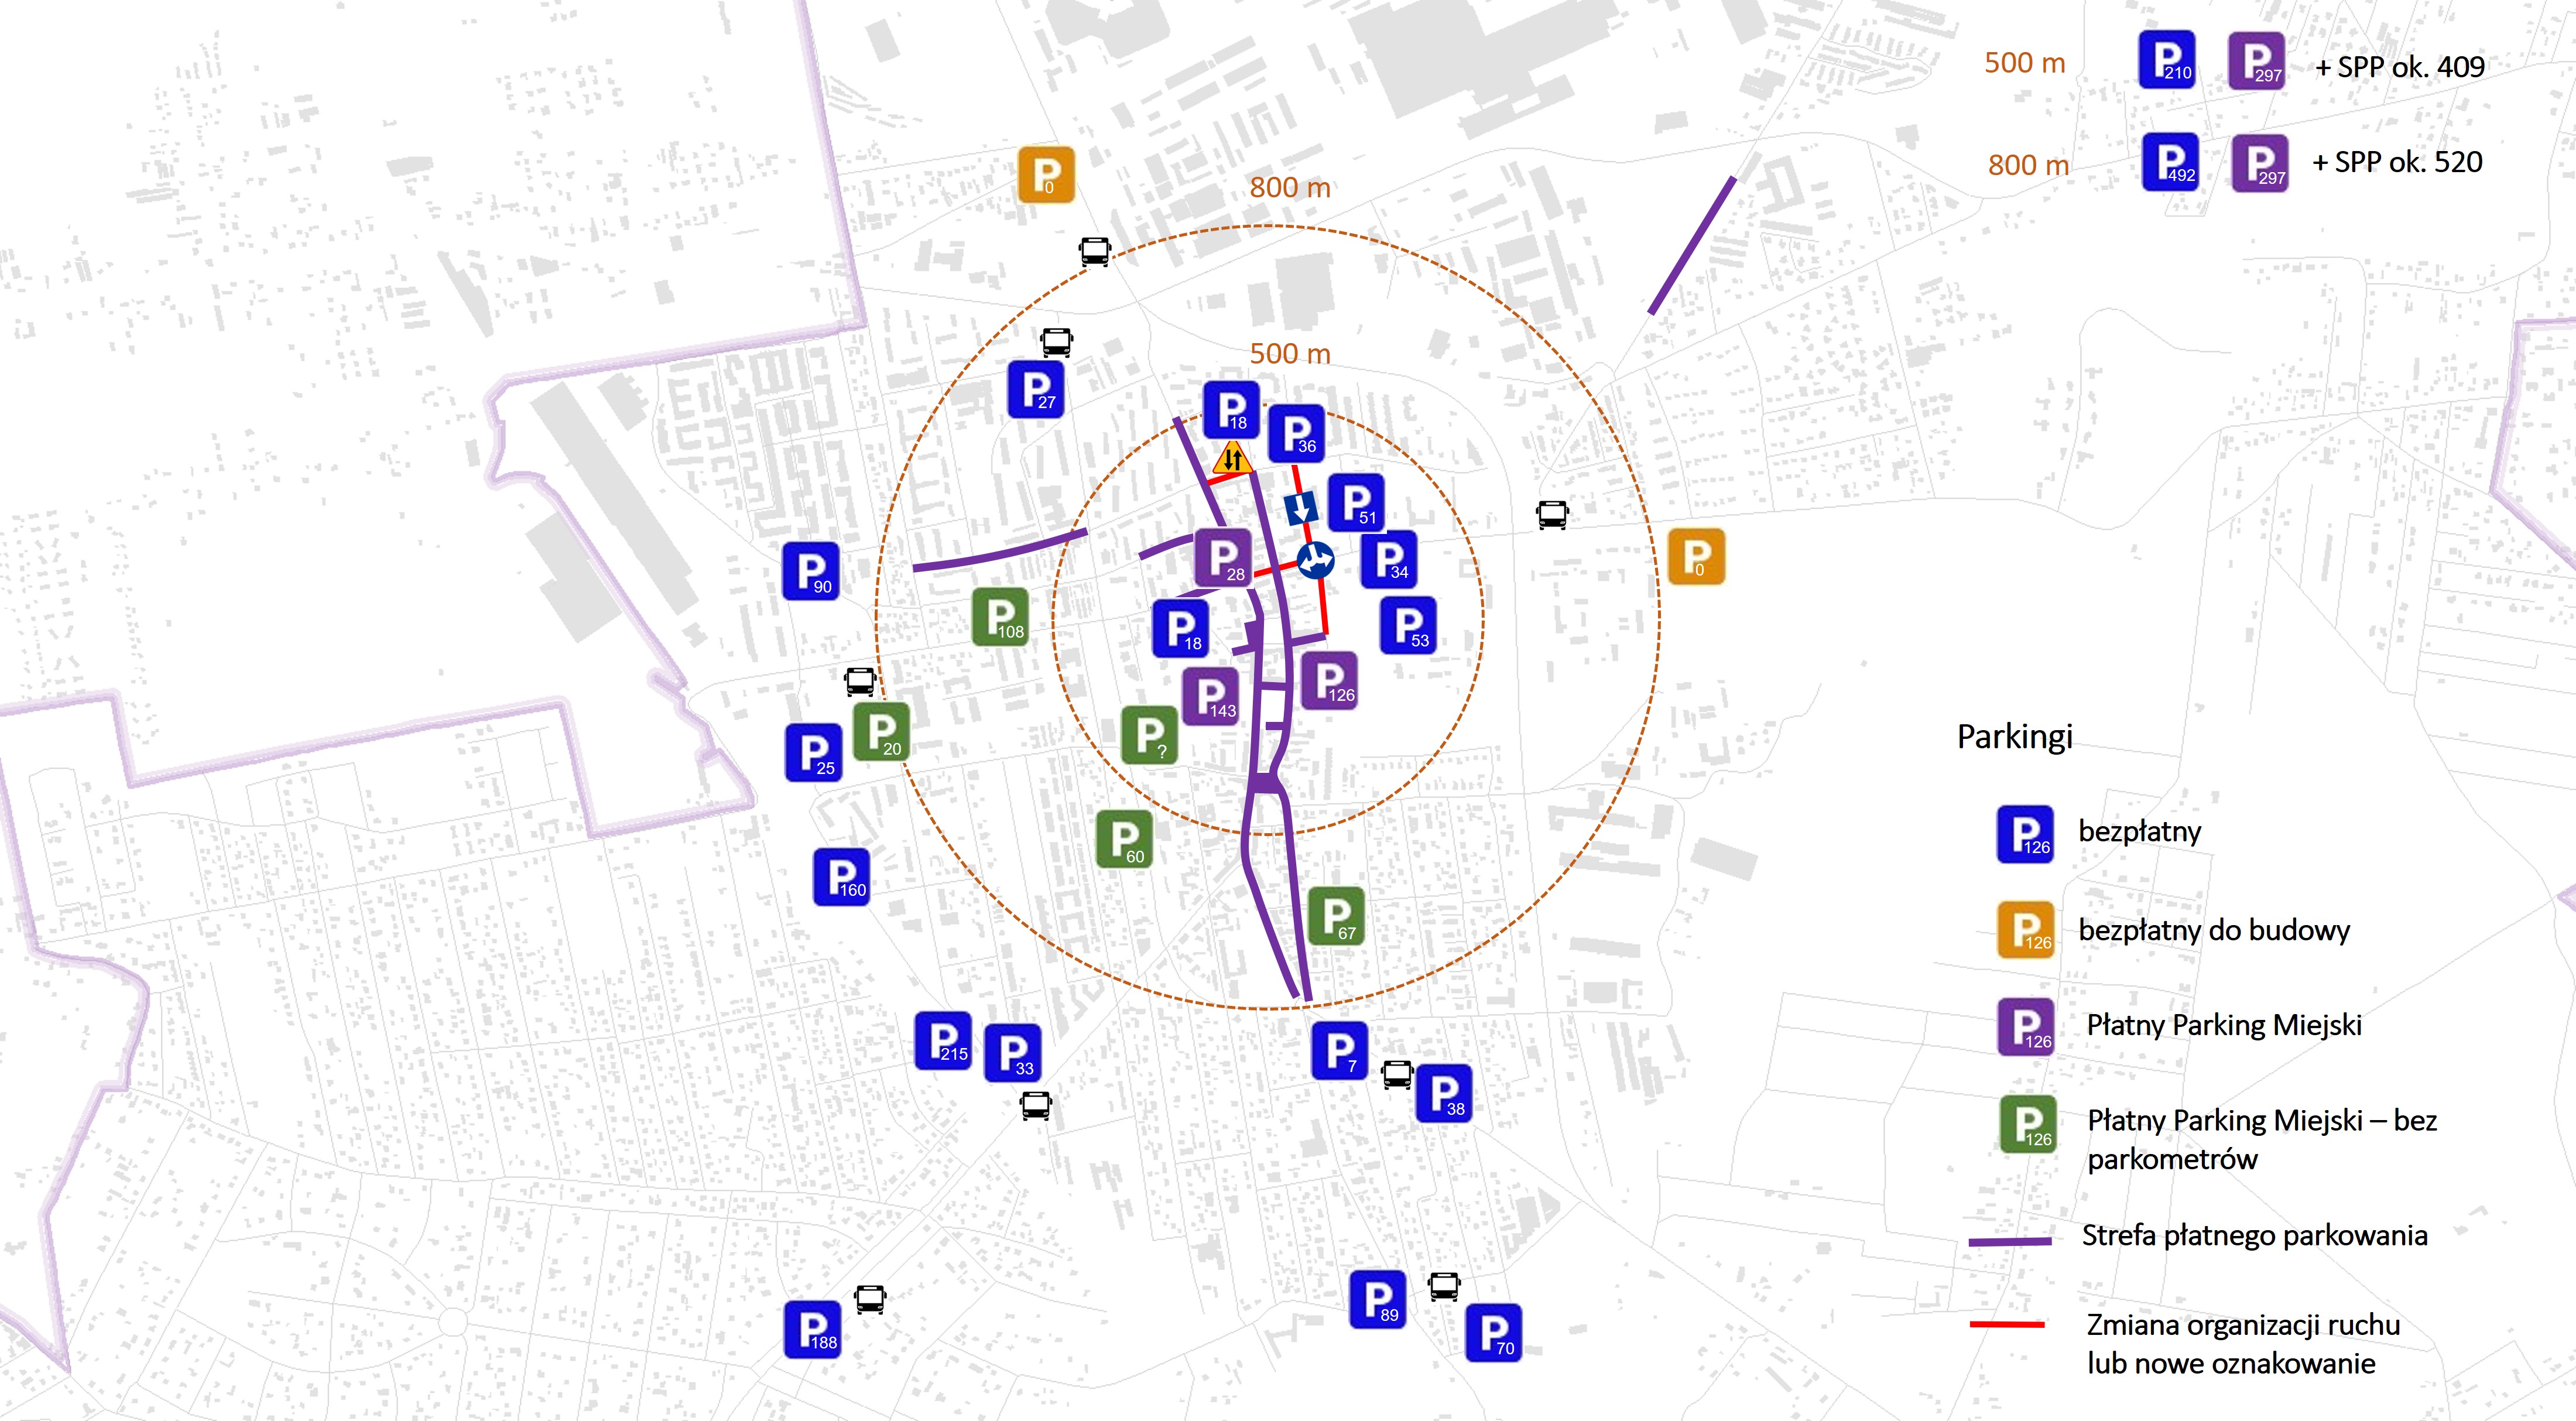 Rusza rozszerzona Strefa Płatnego Parkowania. Grafika prezentująca lokalizację parkingów wraz z liczbą dostępnych miejsc parkingowych.